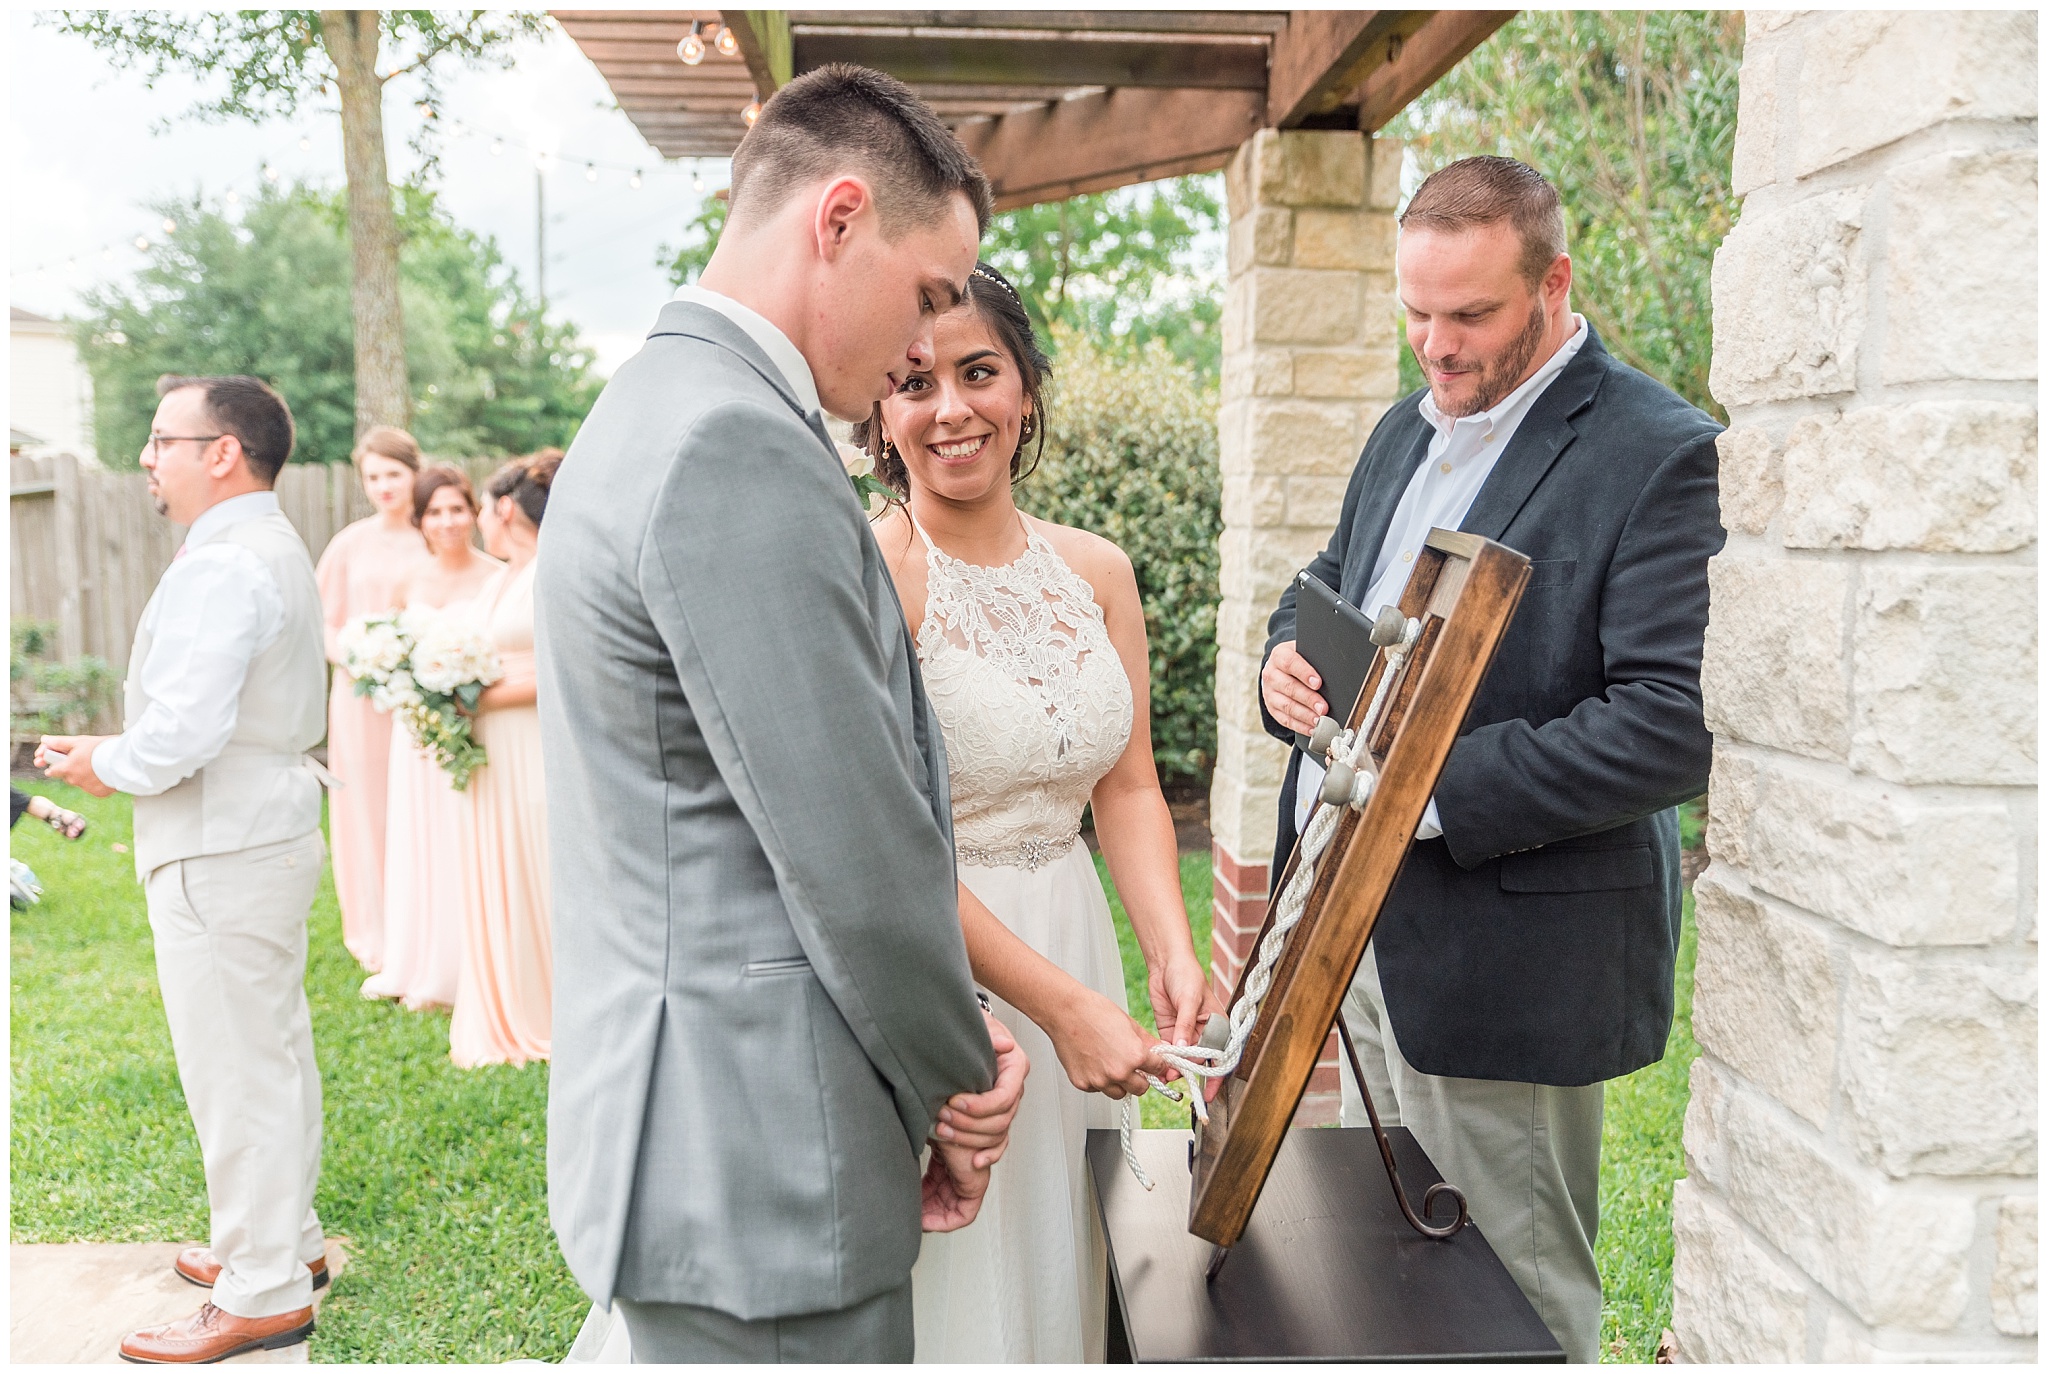 Joyful and Intimate Backyard Wedding Cypress Texas-2017-06-14_0031